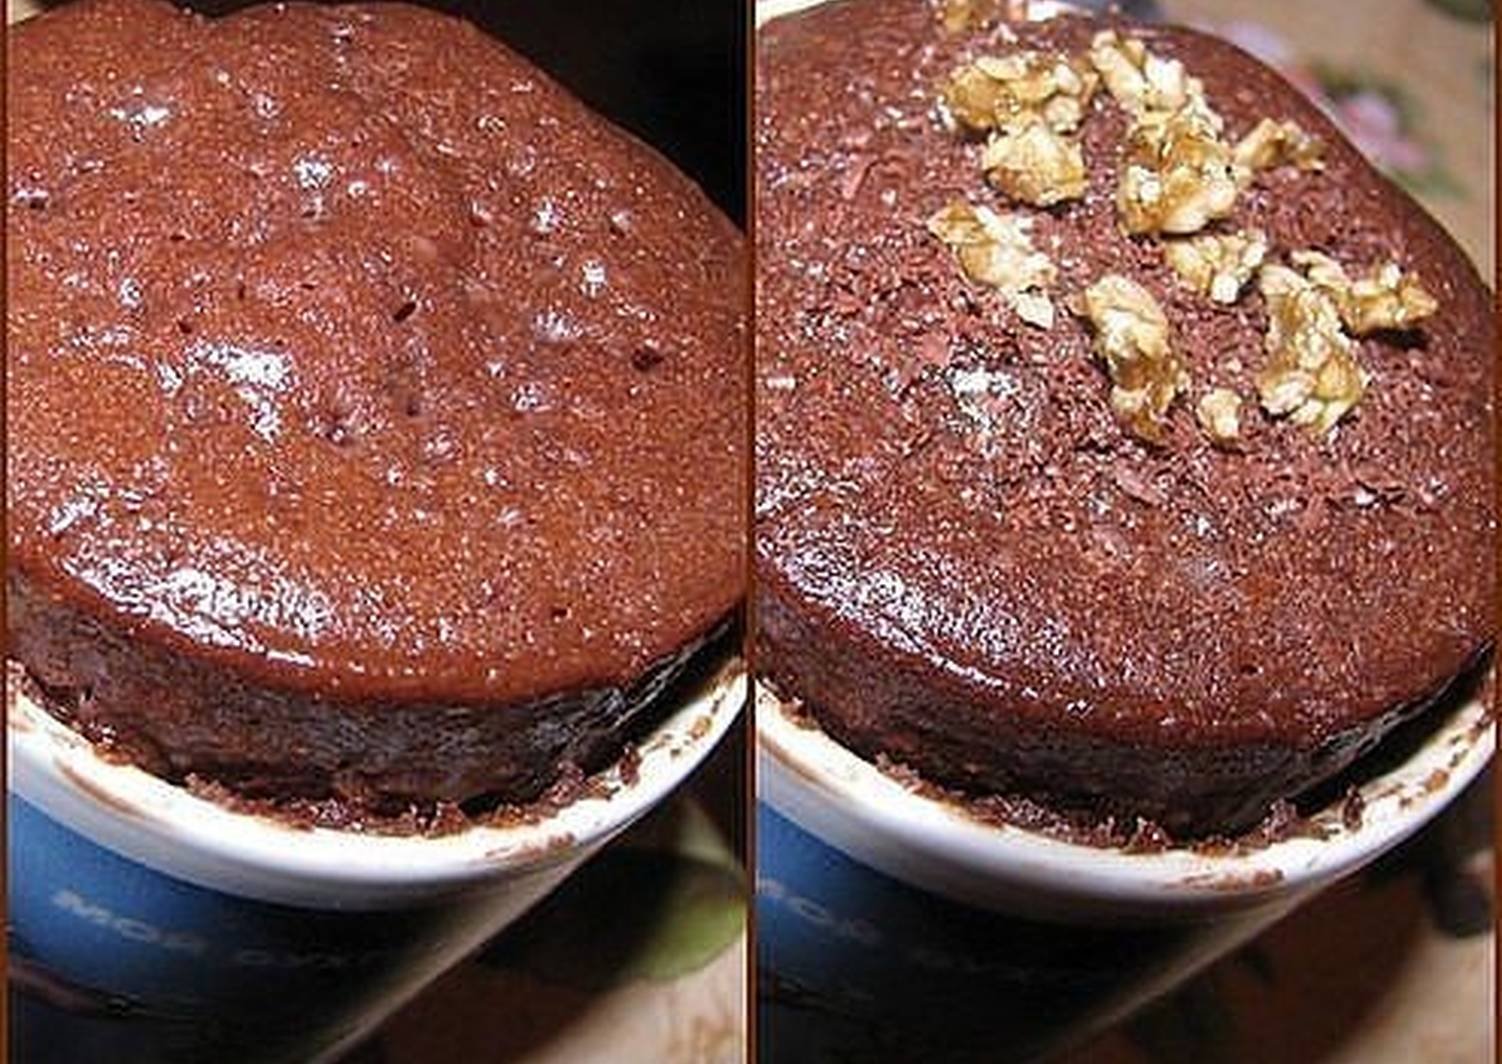 Можно испечь пироги в микроволновке. Шоколадный кекс в микроволновке. Торт в микроволновке с какао. Торт в микроволновке без какао. Шоколадное тортик в микроволновке.